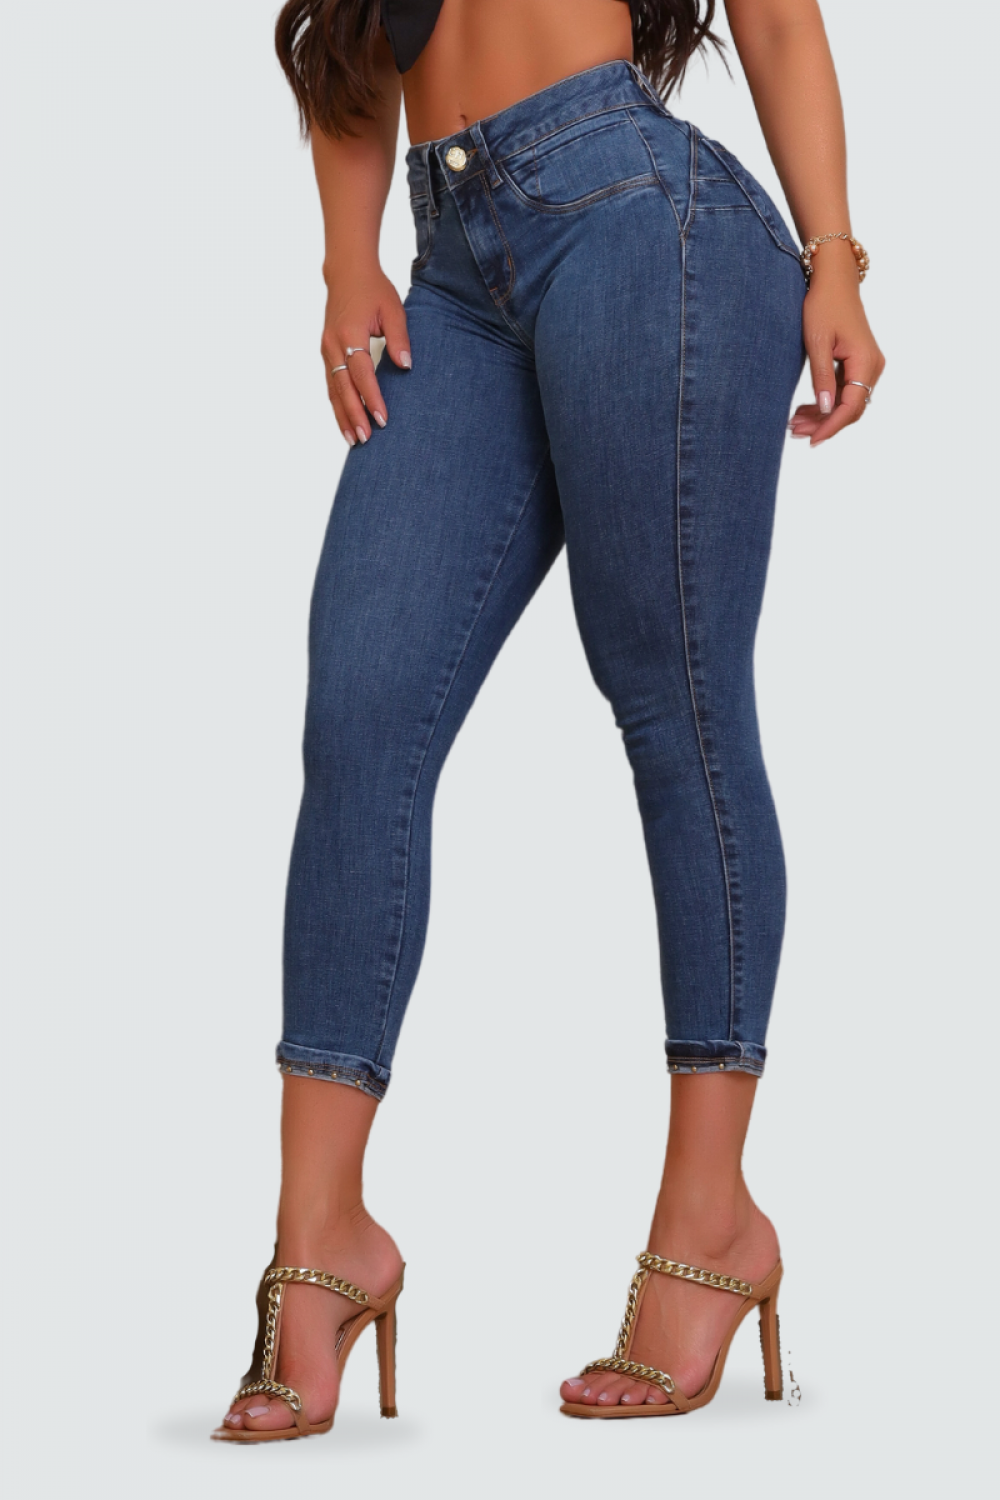 Calça Feminina Jeans Capri Modeladora Cintural Alta Escura no Shoptime